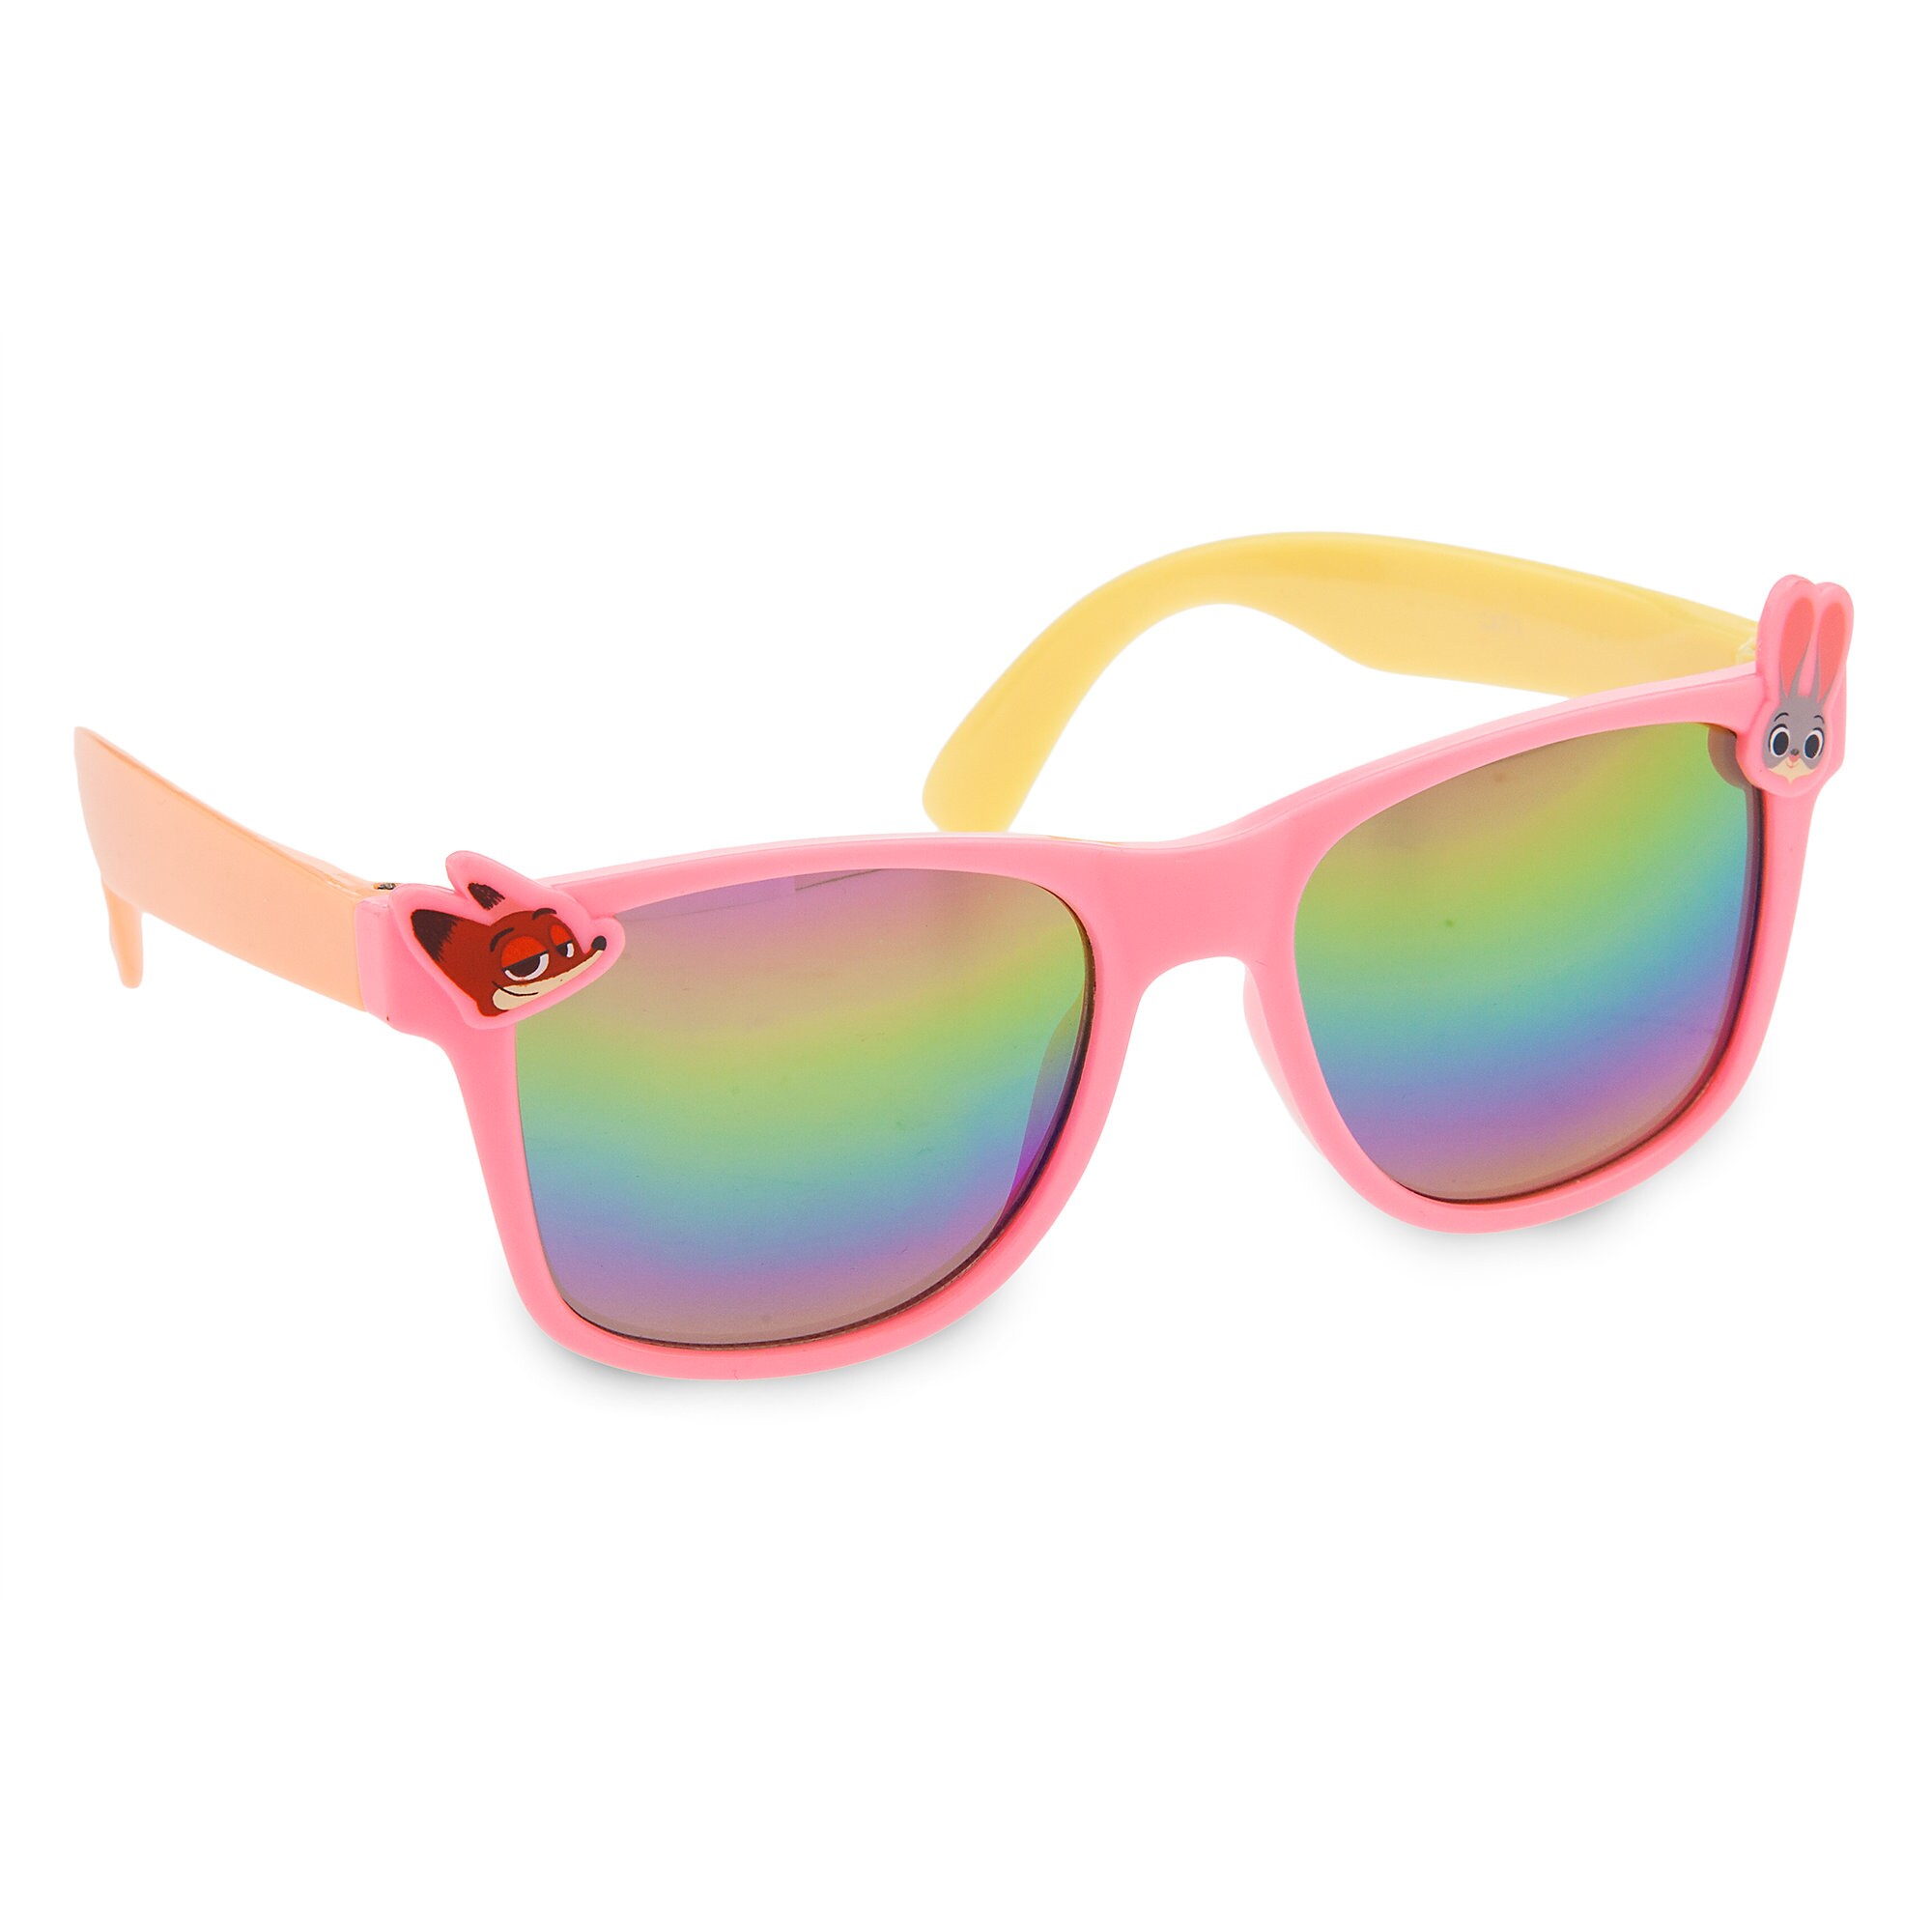 Zootopia Sunglasses for Kids